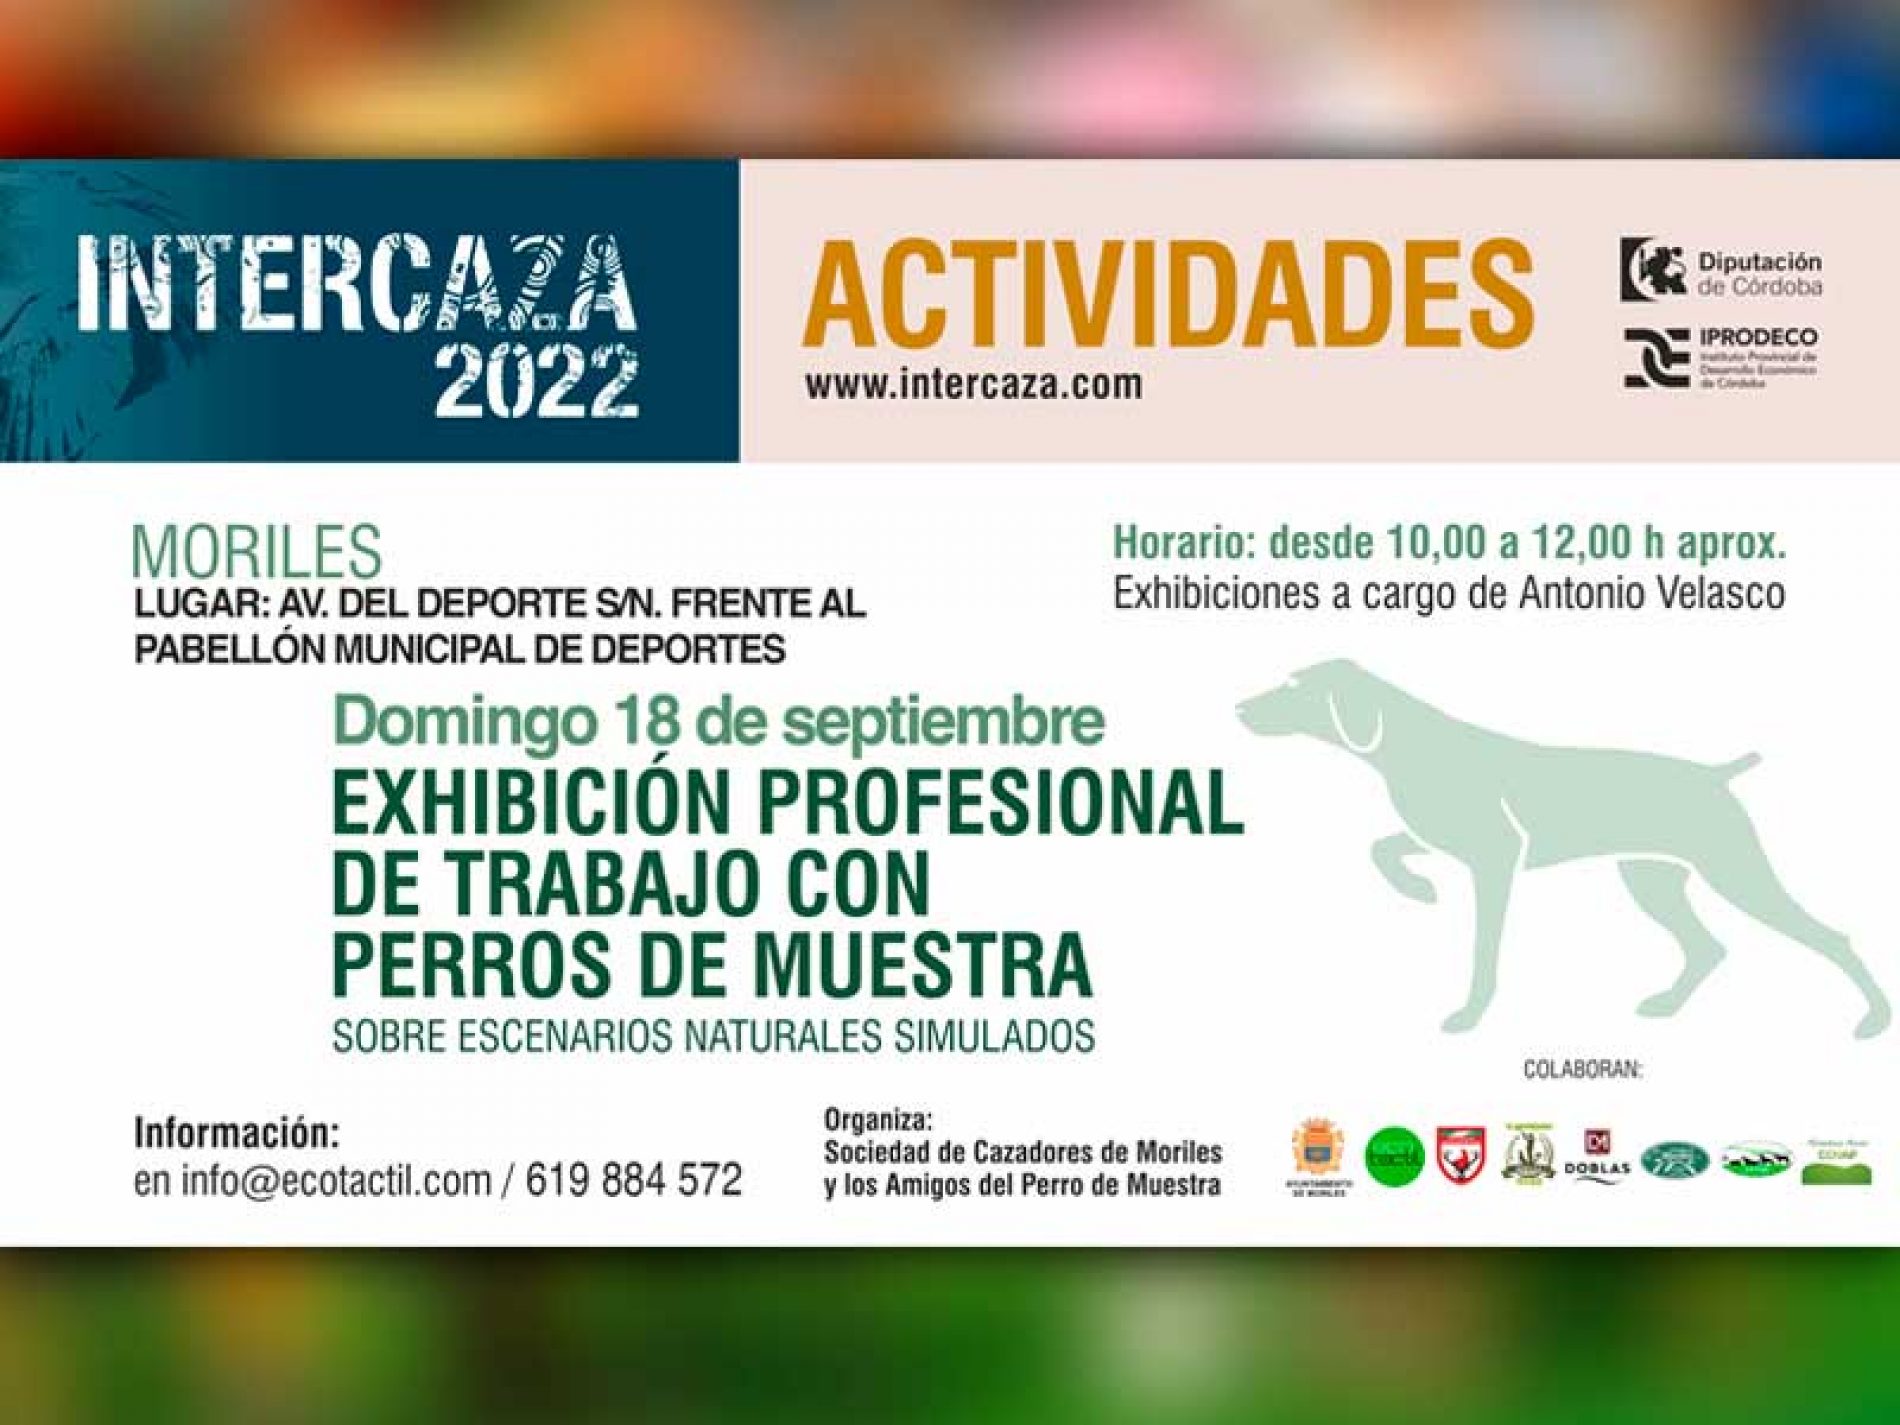 Intercaza 2022 calienta motores con un completo programa de actividades de caza y naturaleza por toda Córdoba